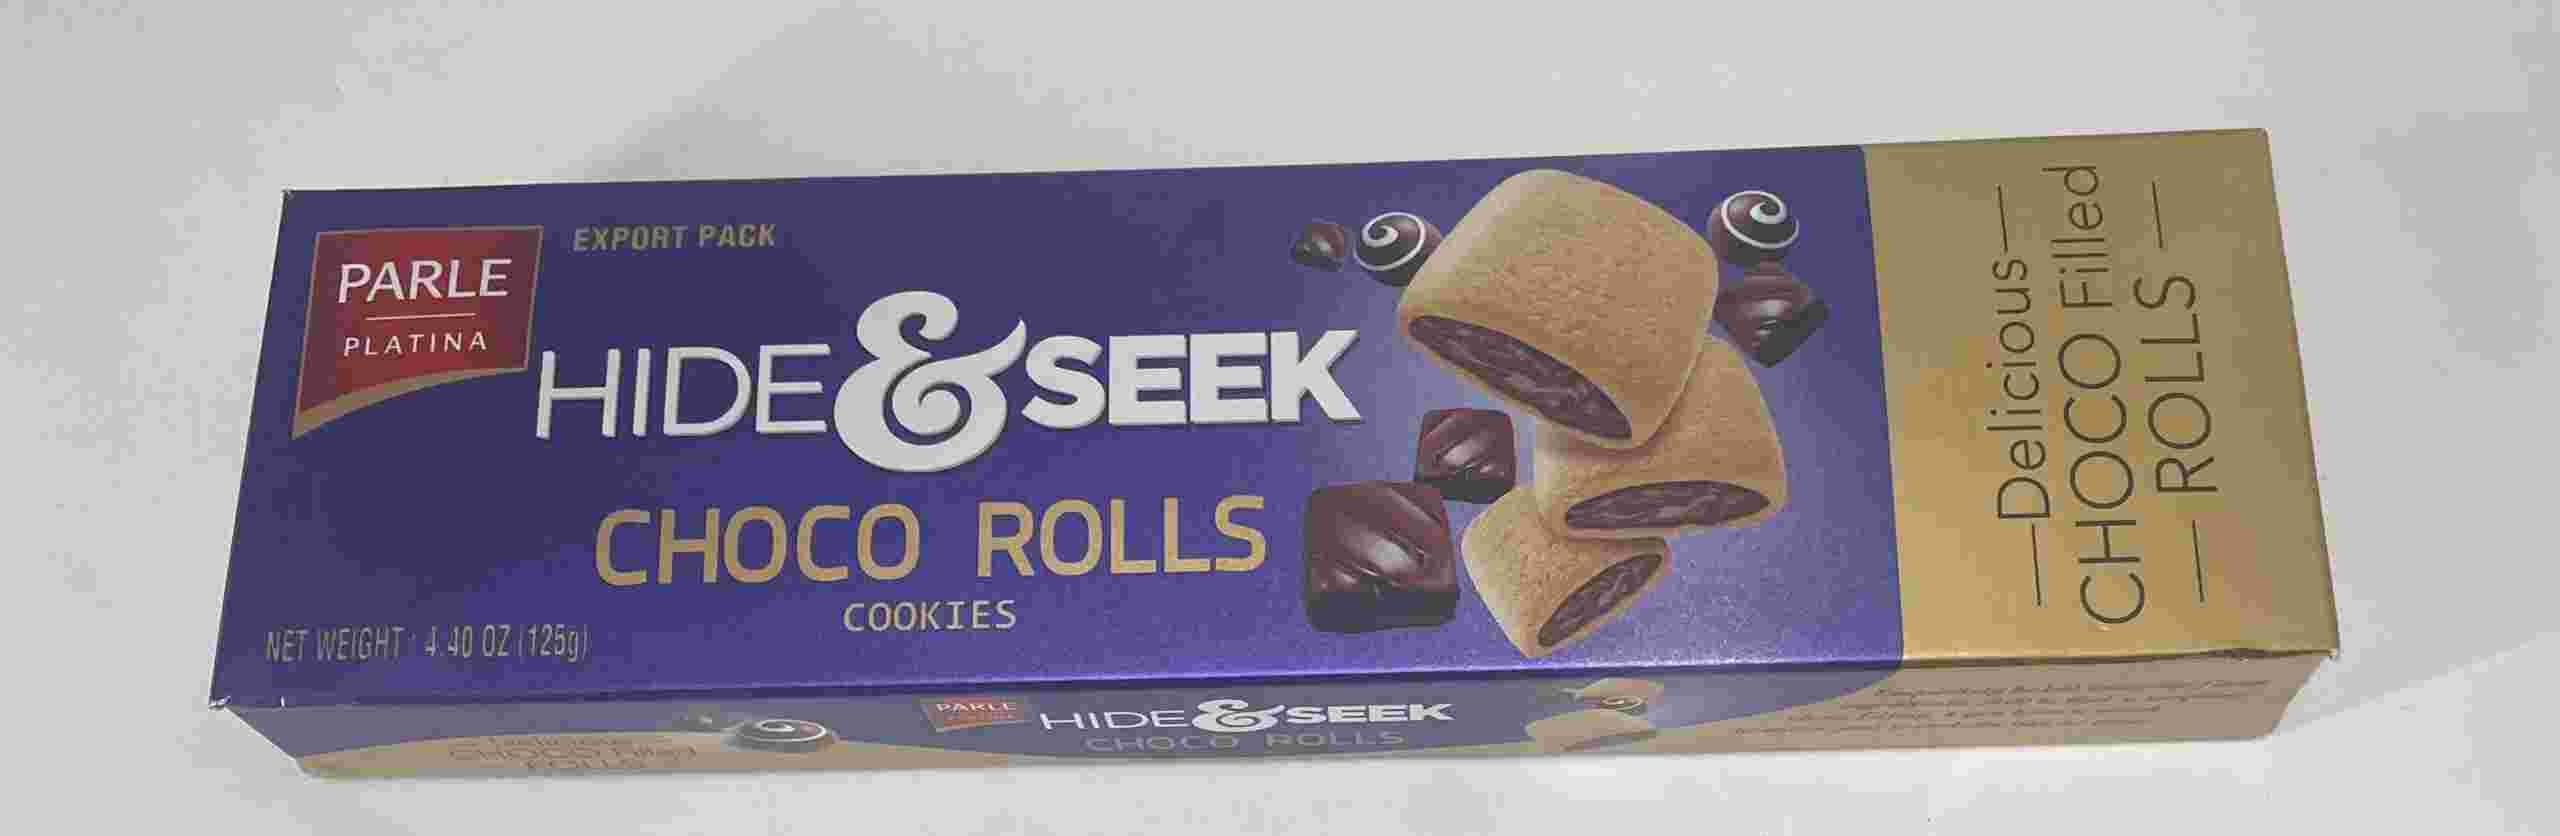 Parle Hide & Seek Choco Rools